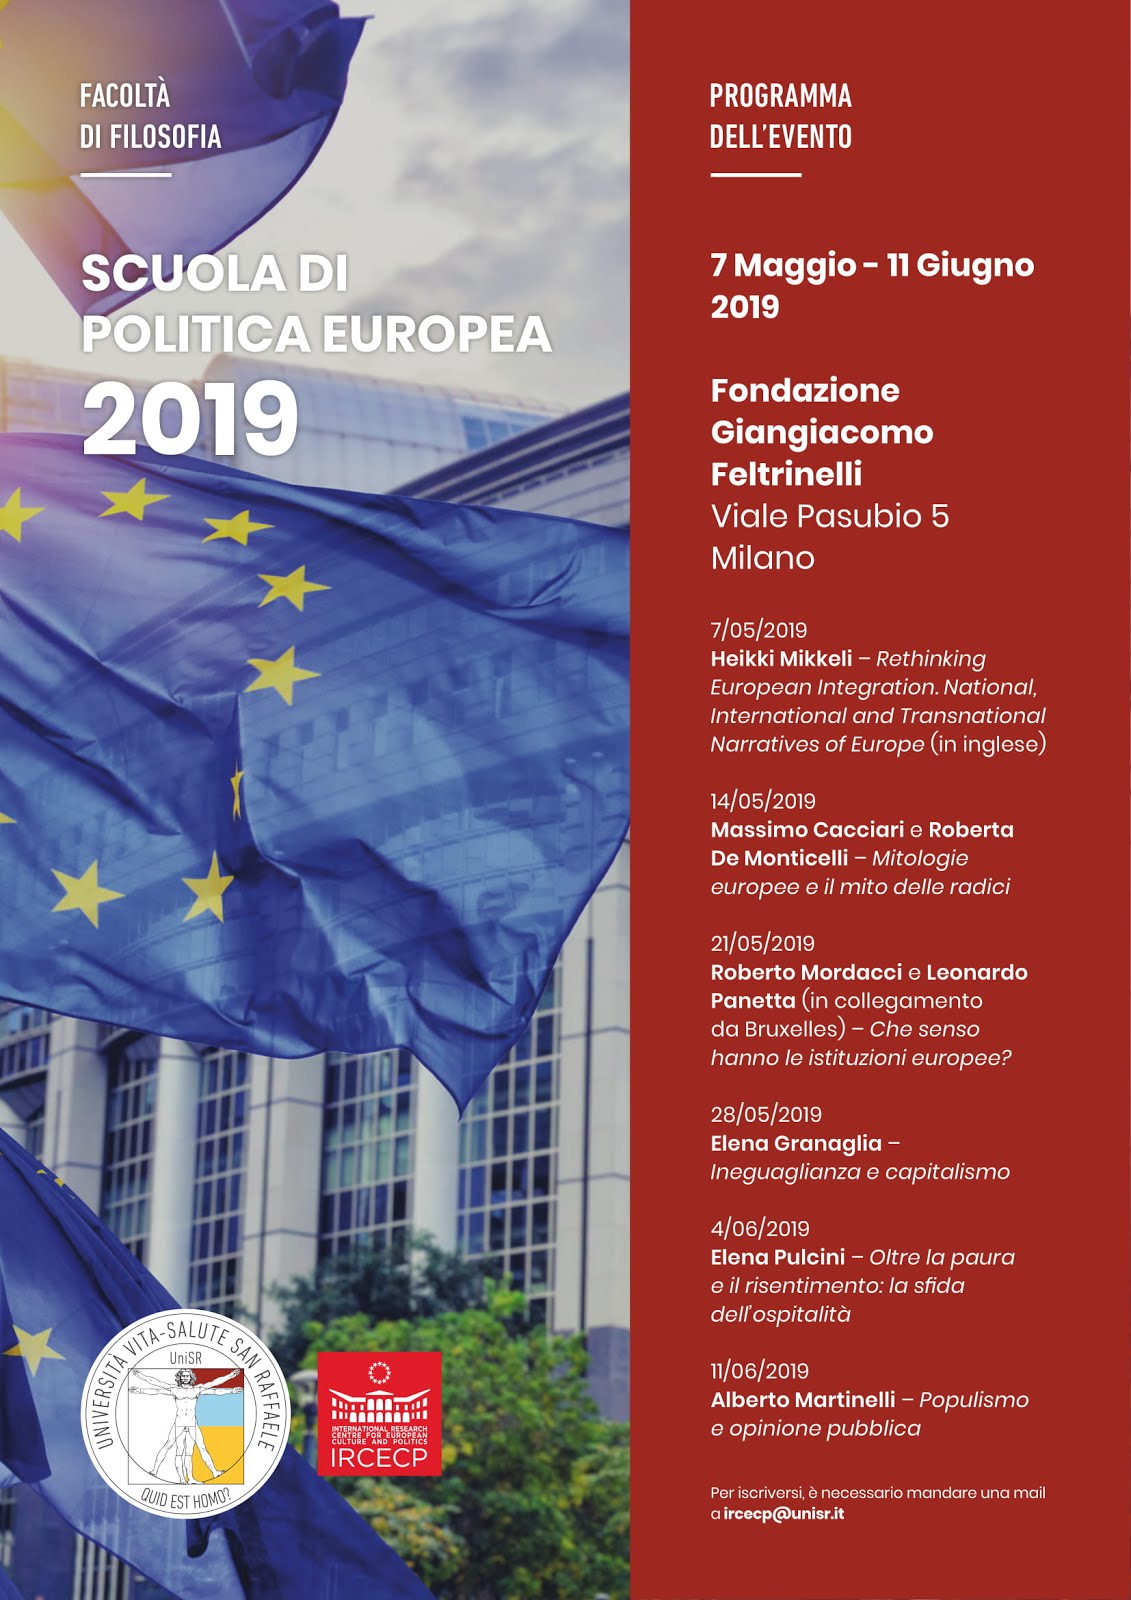 SCUOLA DI POLITICA EUROPEA 2019